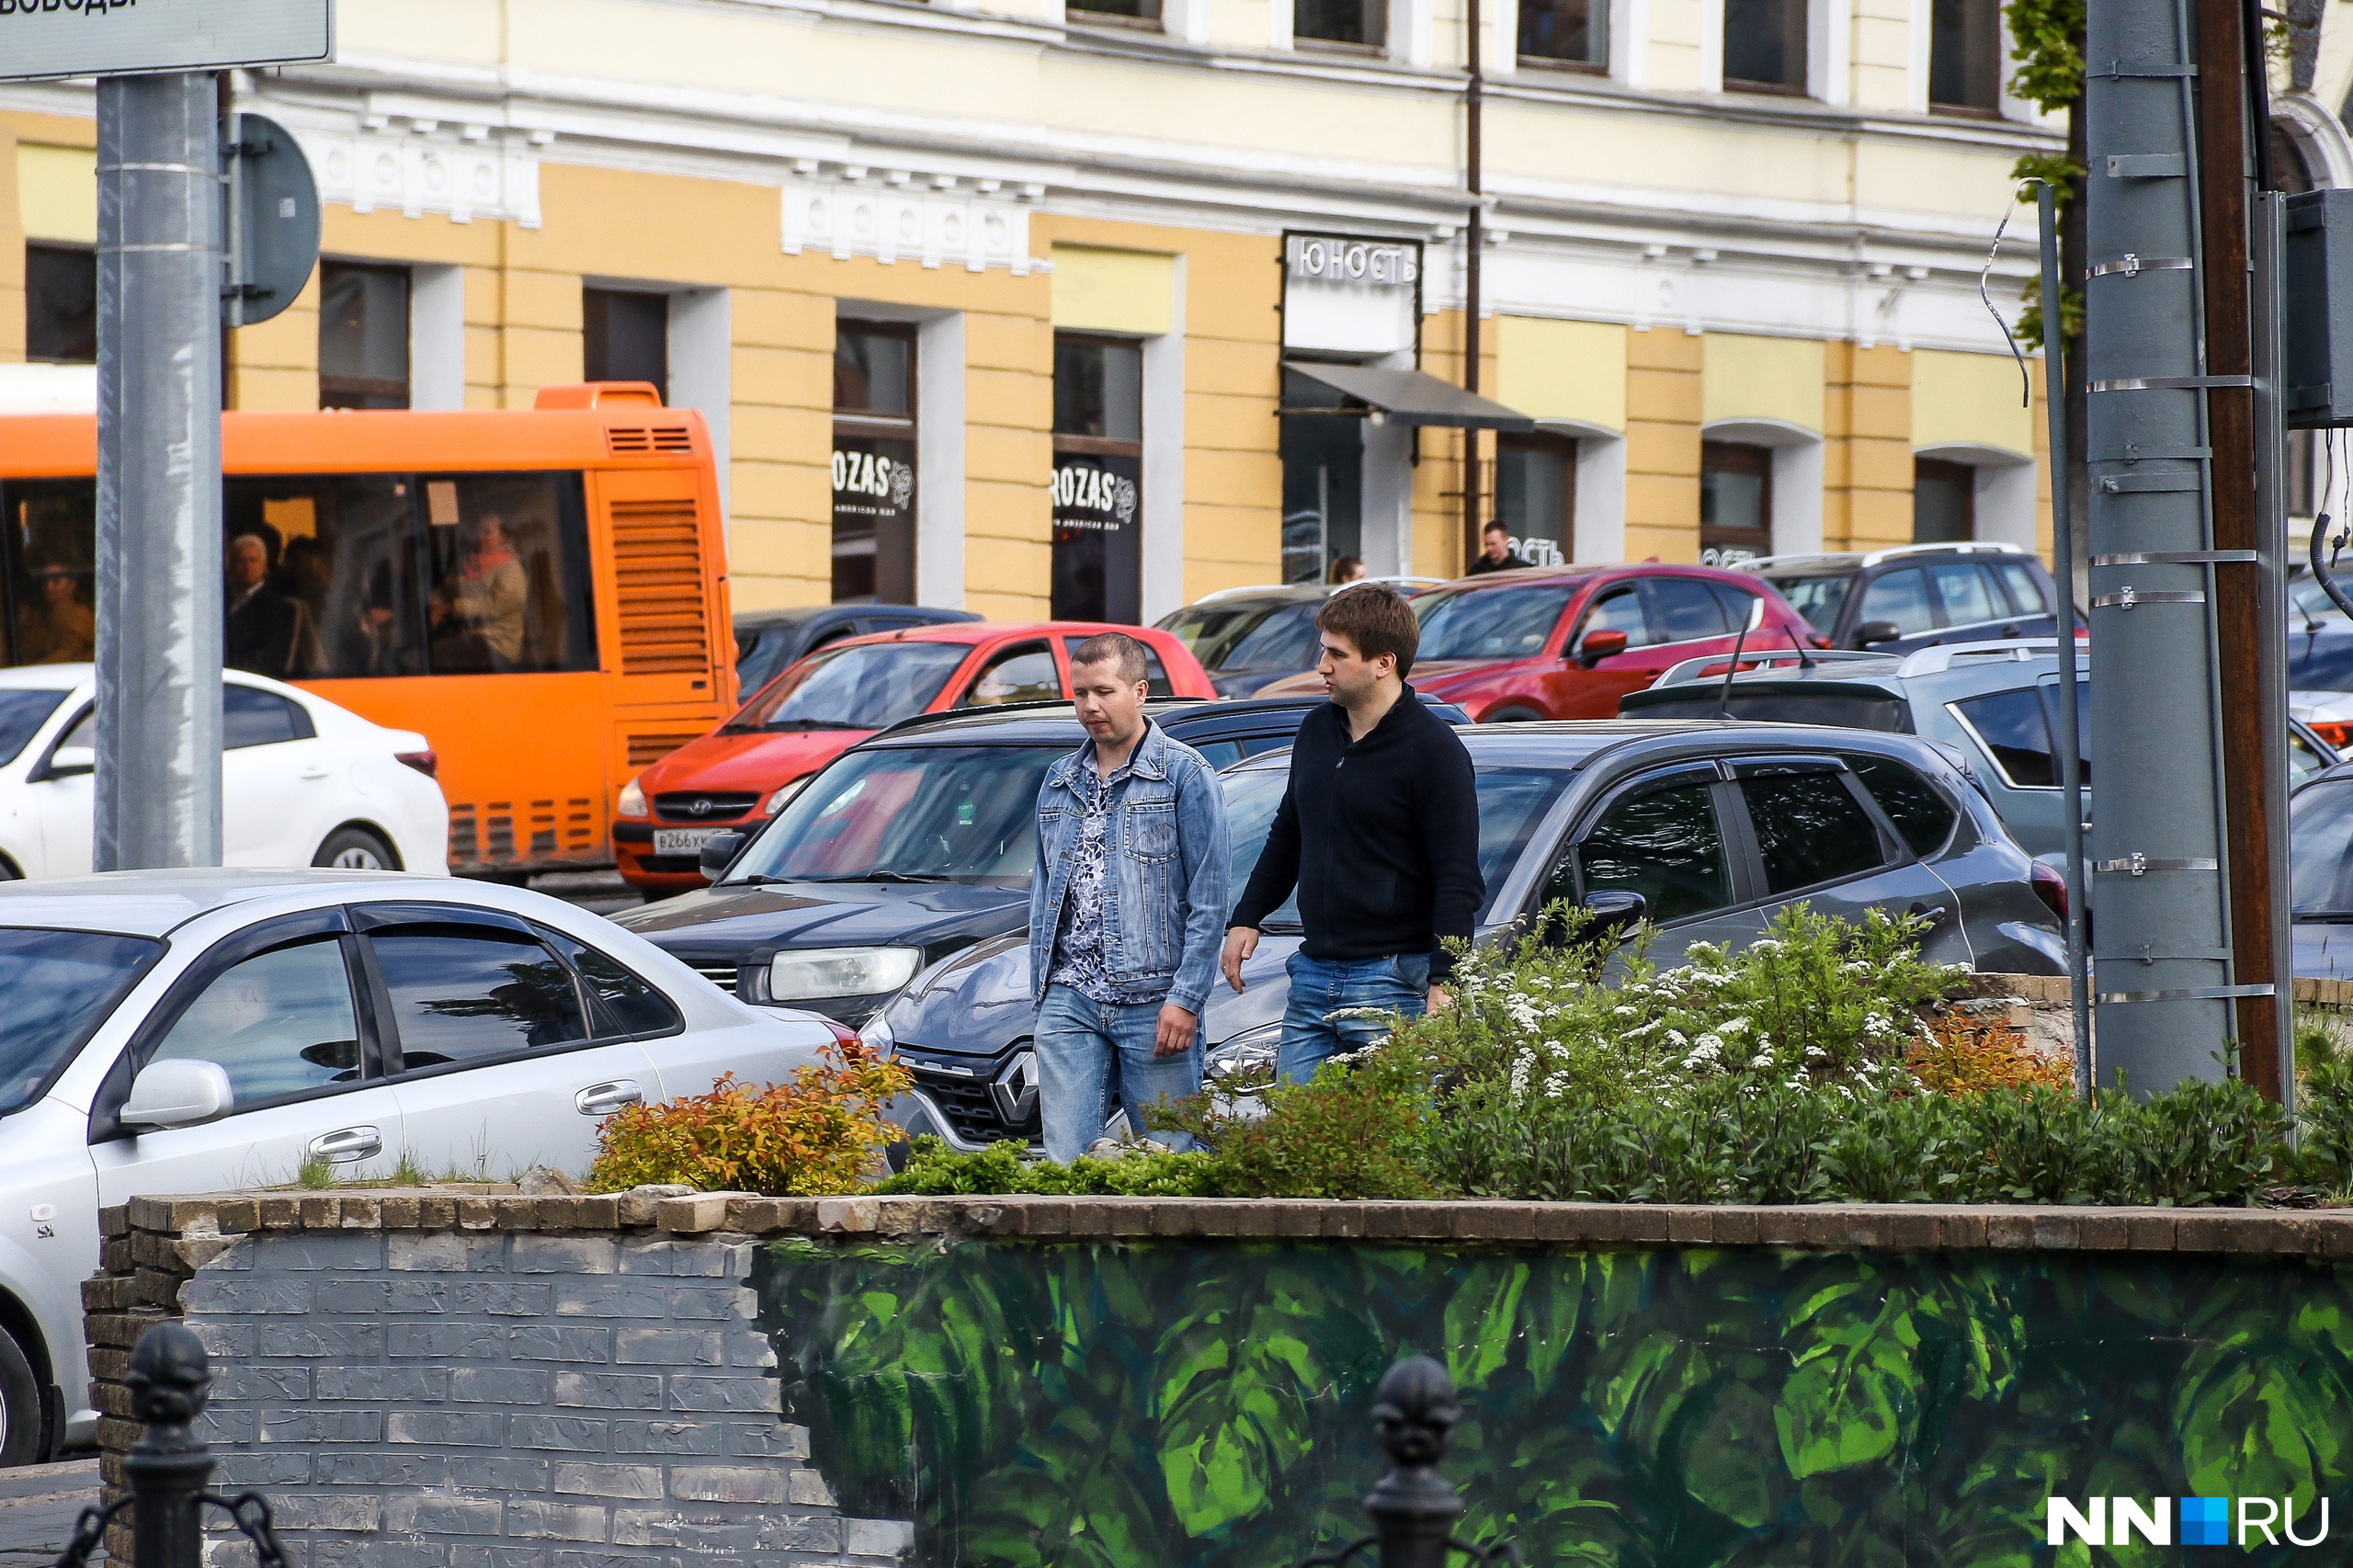 Пробки уже не объехать. В центре Нижнего Новгорода перекроют оживленную улицу на полмесяца